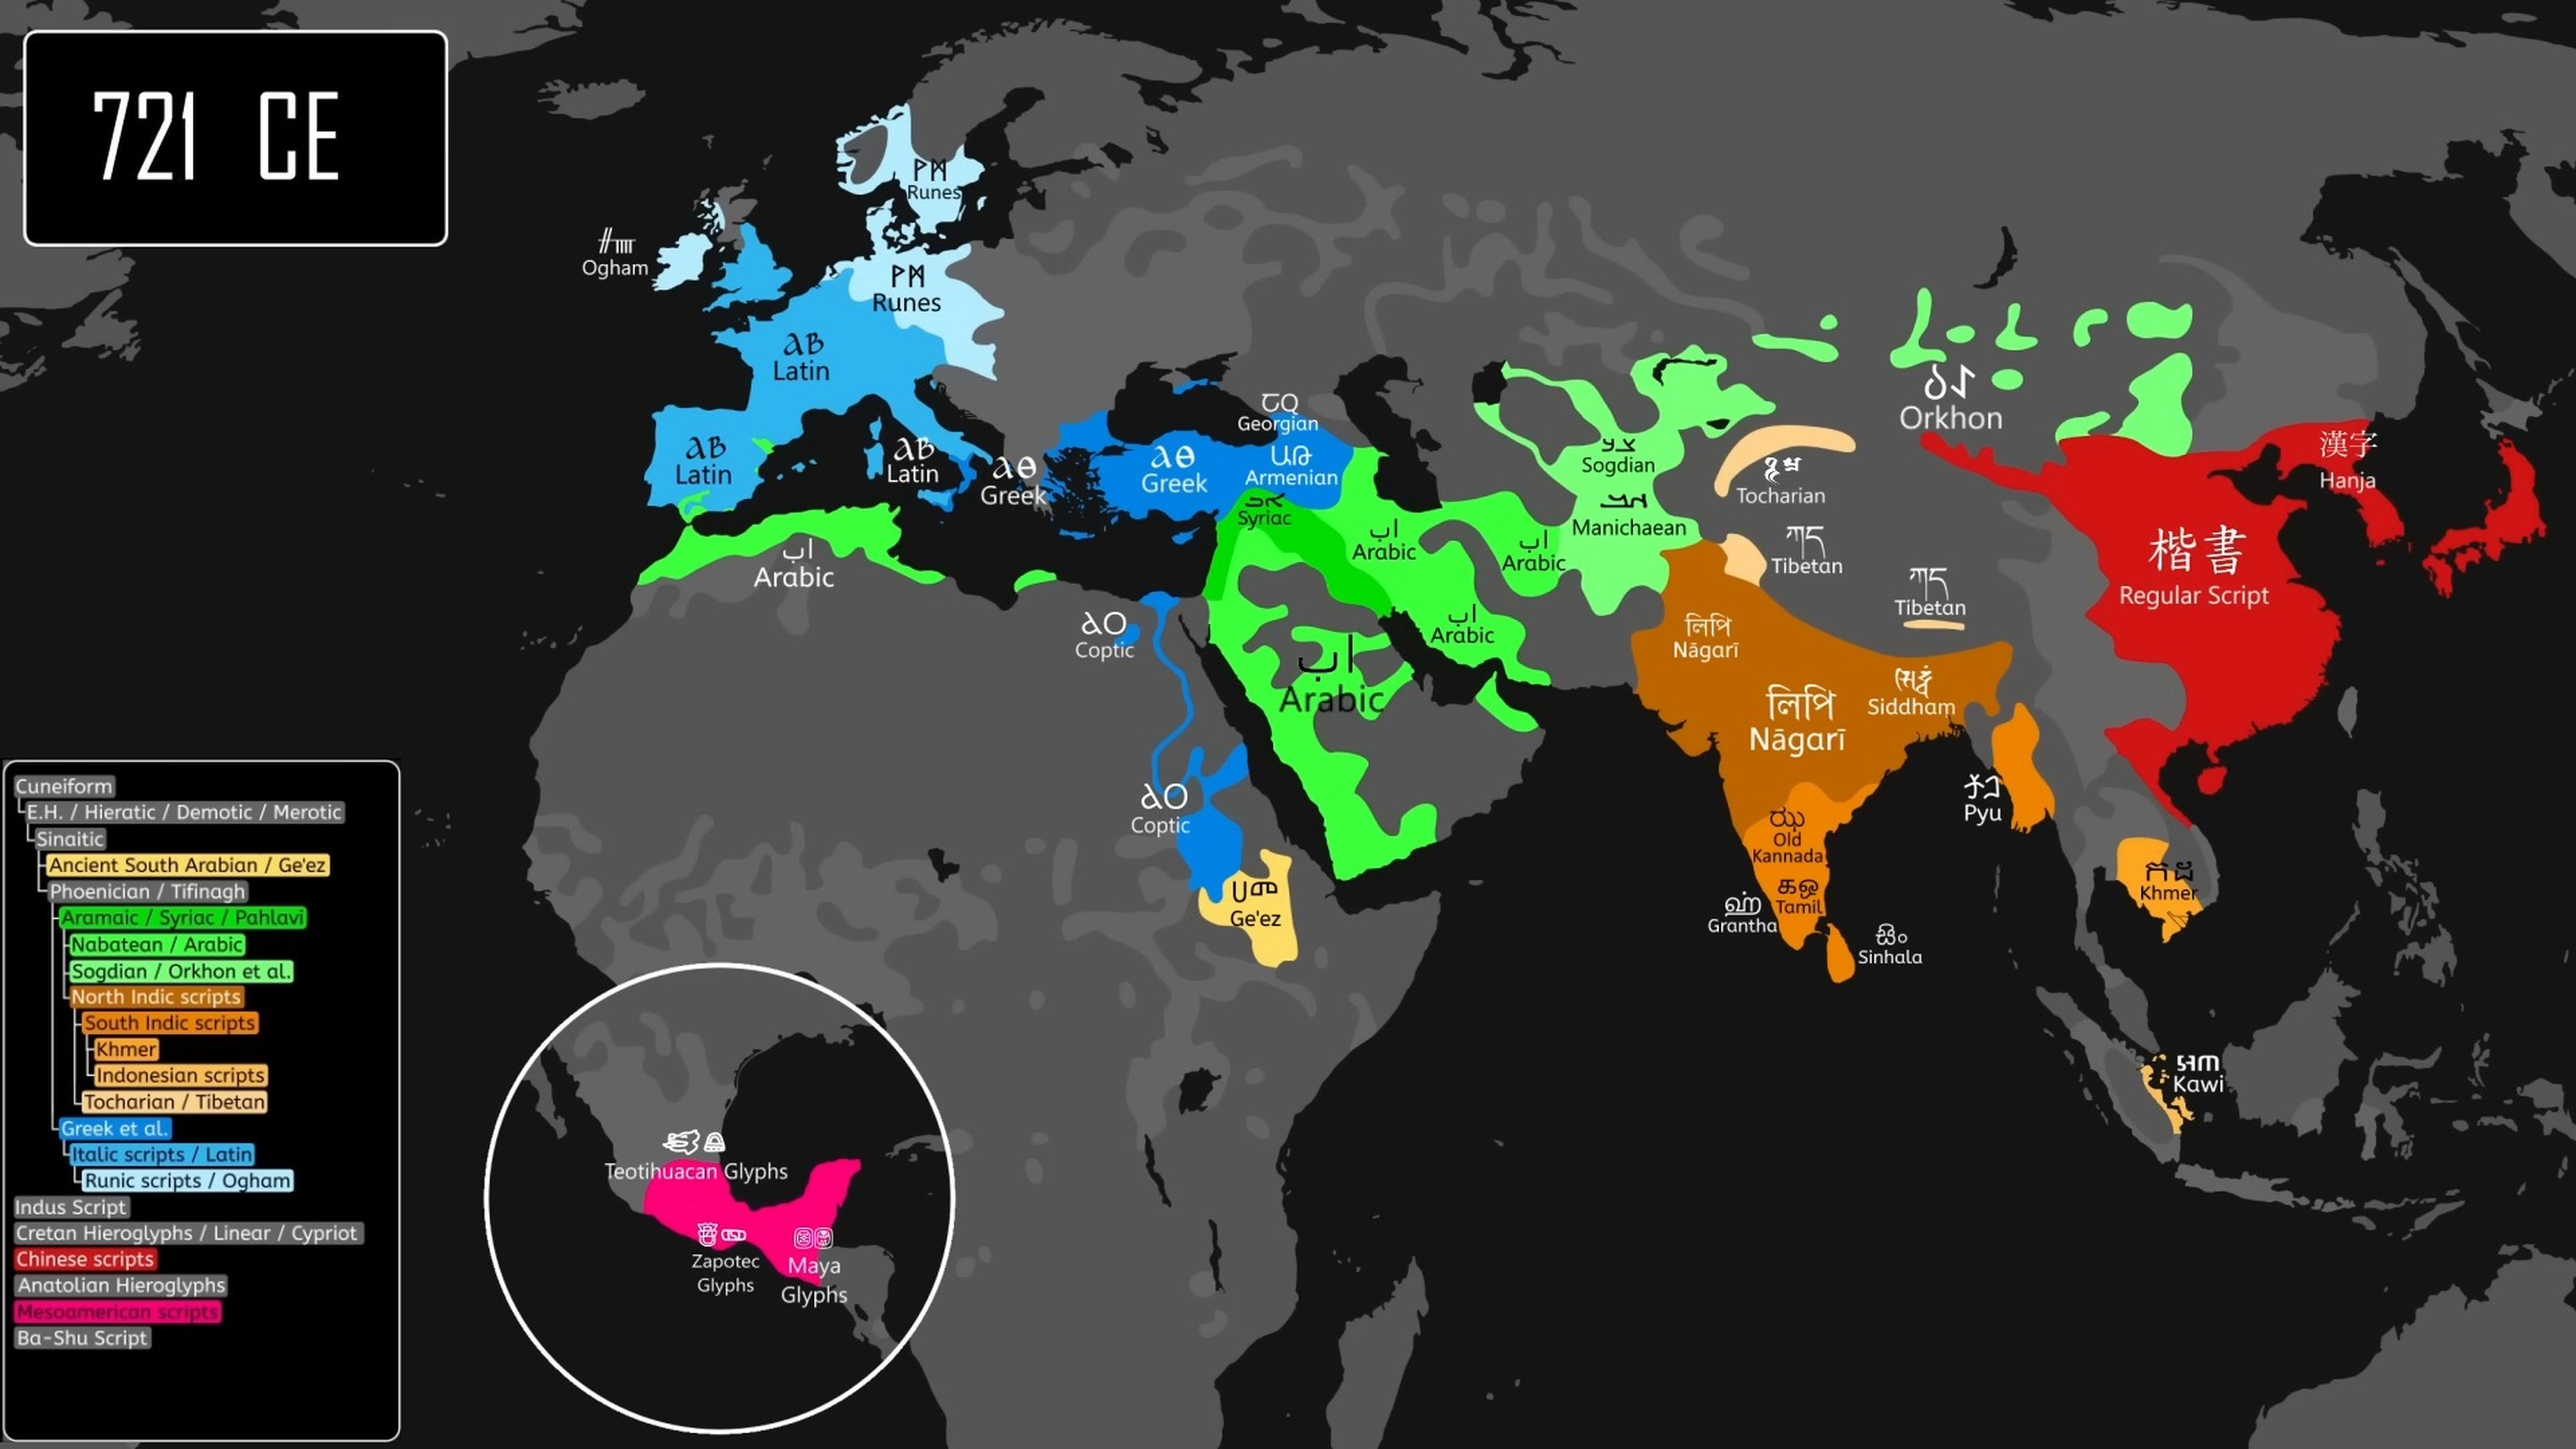 Este espectacular mapa muestra cómo se extendió la escritura por el mundo, y te va a sorprender